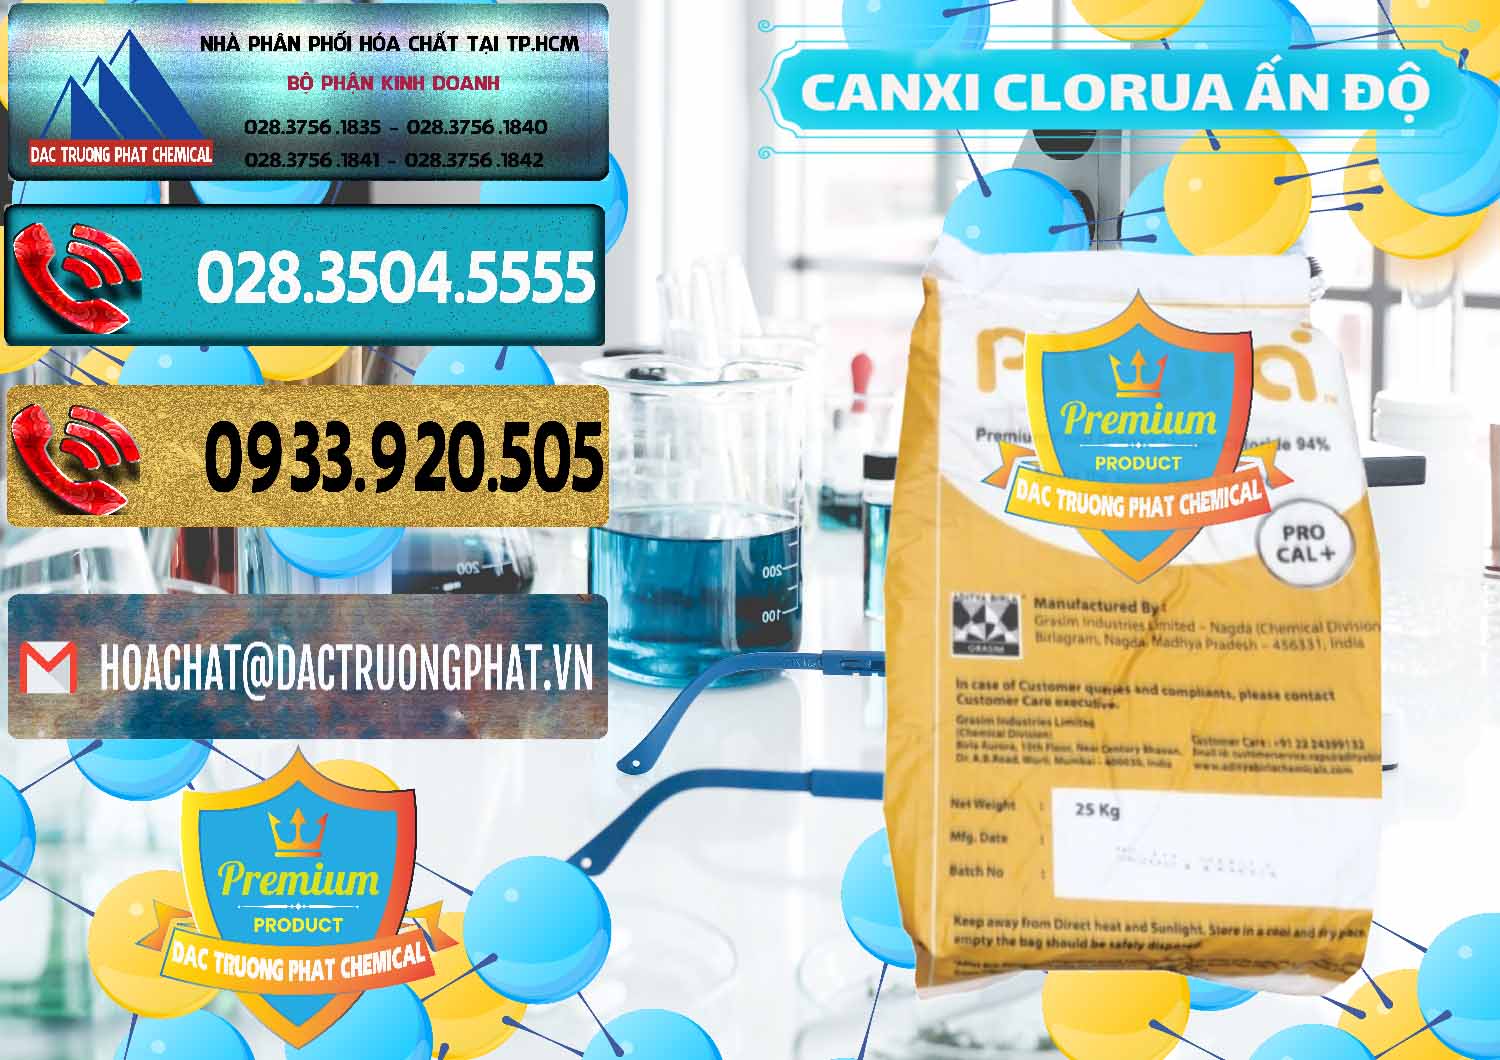 Đơn vị chuyên bán _ phân phối CaCl2 – Canxi Clorua Food Grade Altura Aditya Birla Grasim Ấn Độ India - 0436 - Công ty phân phối & nhập khẩu hóa chất tại TP.HCM - hoachatdetnhuom.com